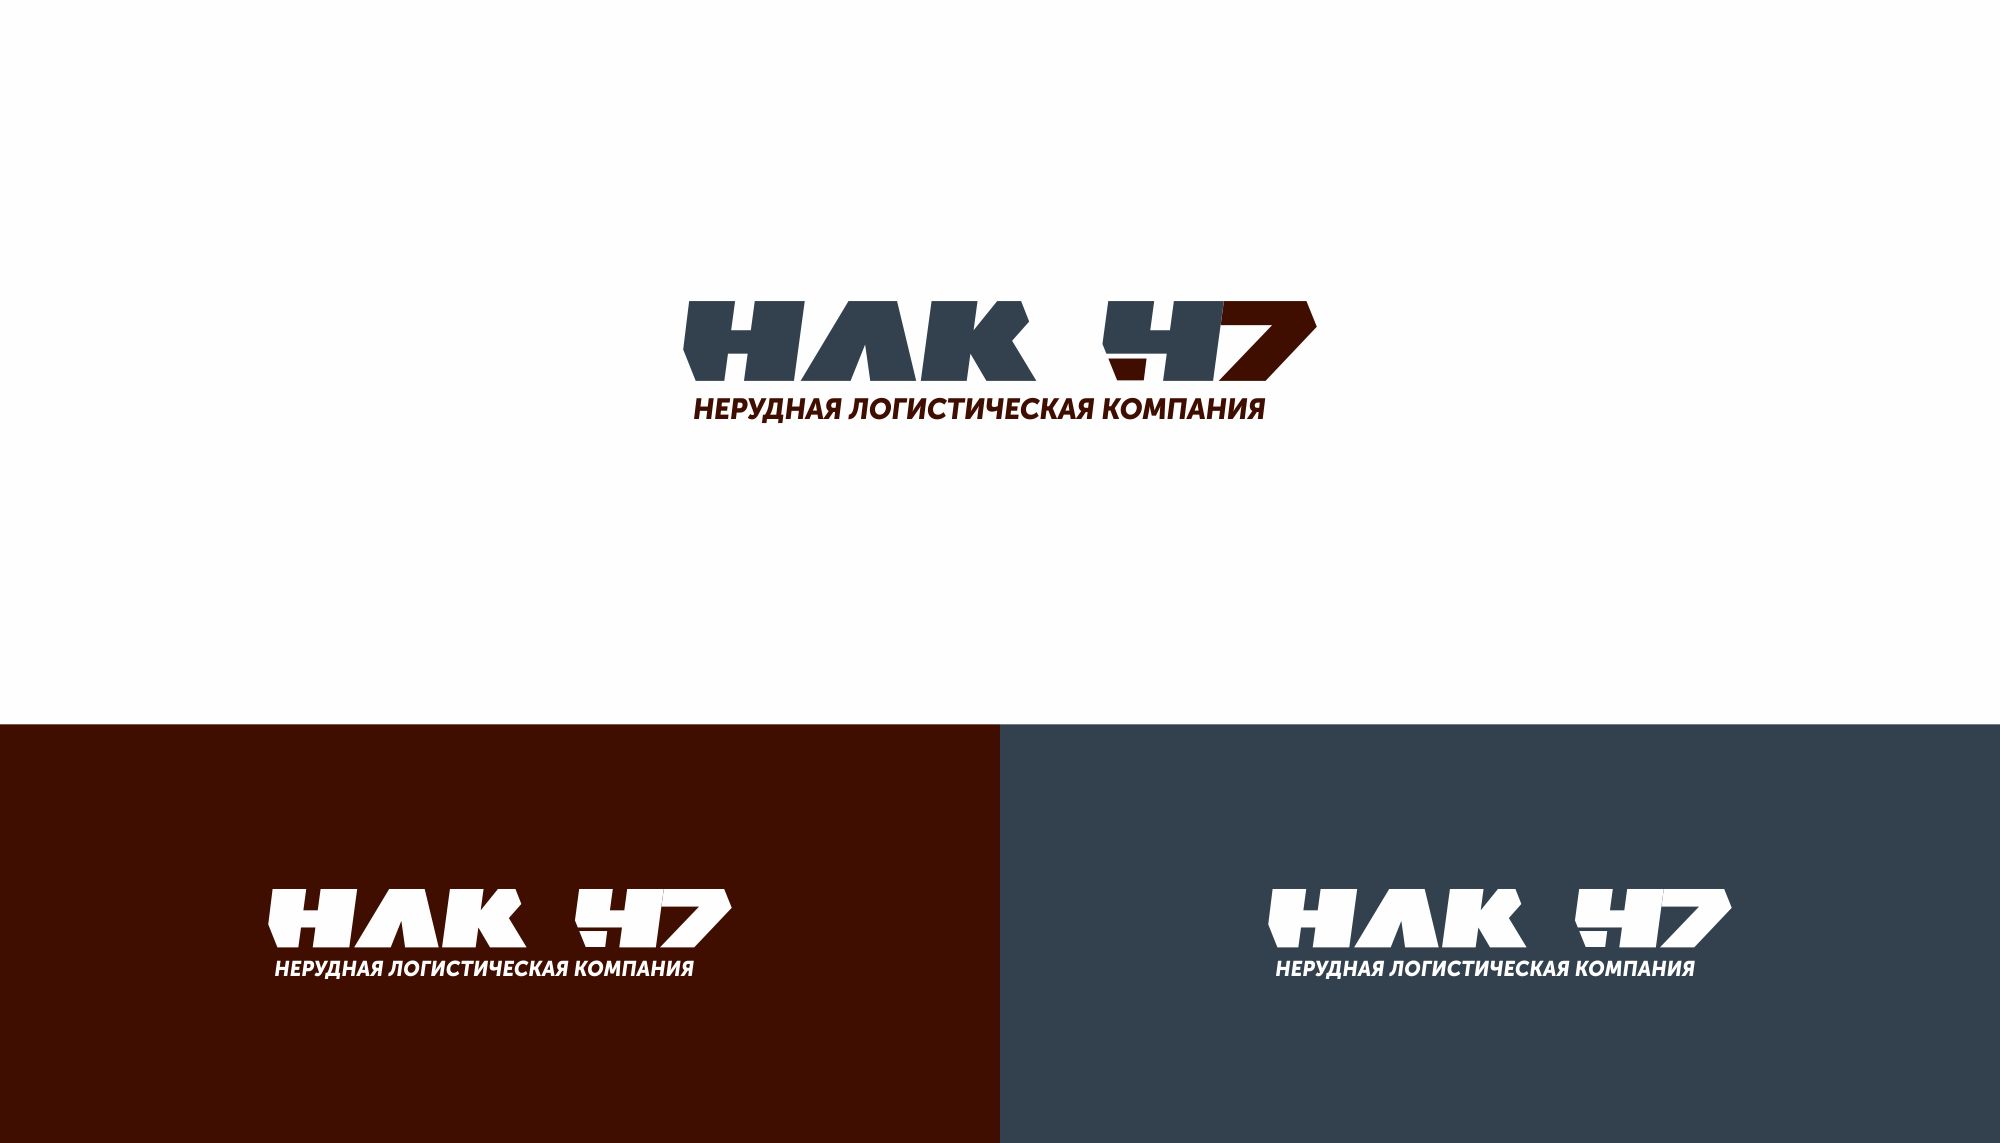 Лого и фирменный стиль для Нерудная логистическая компания 47 (НЛК 47) - дизайнер markosov